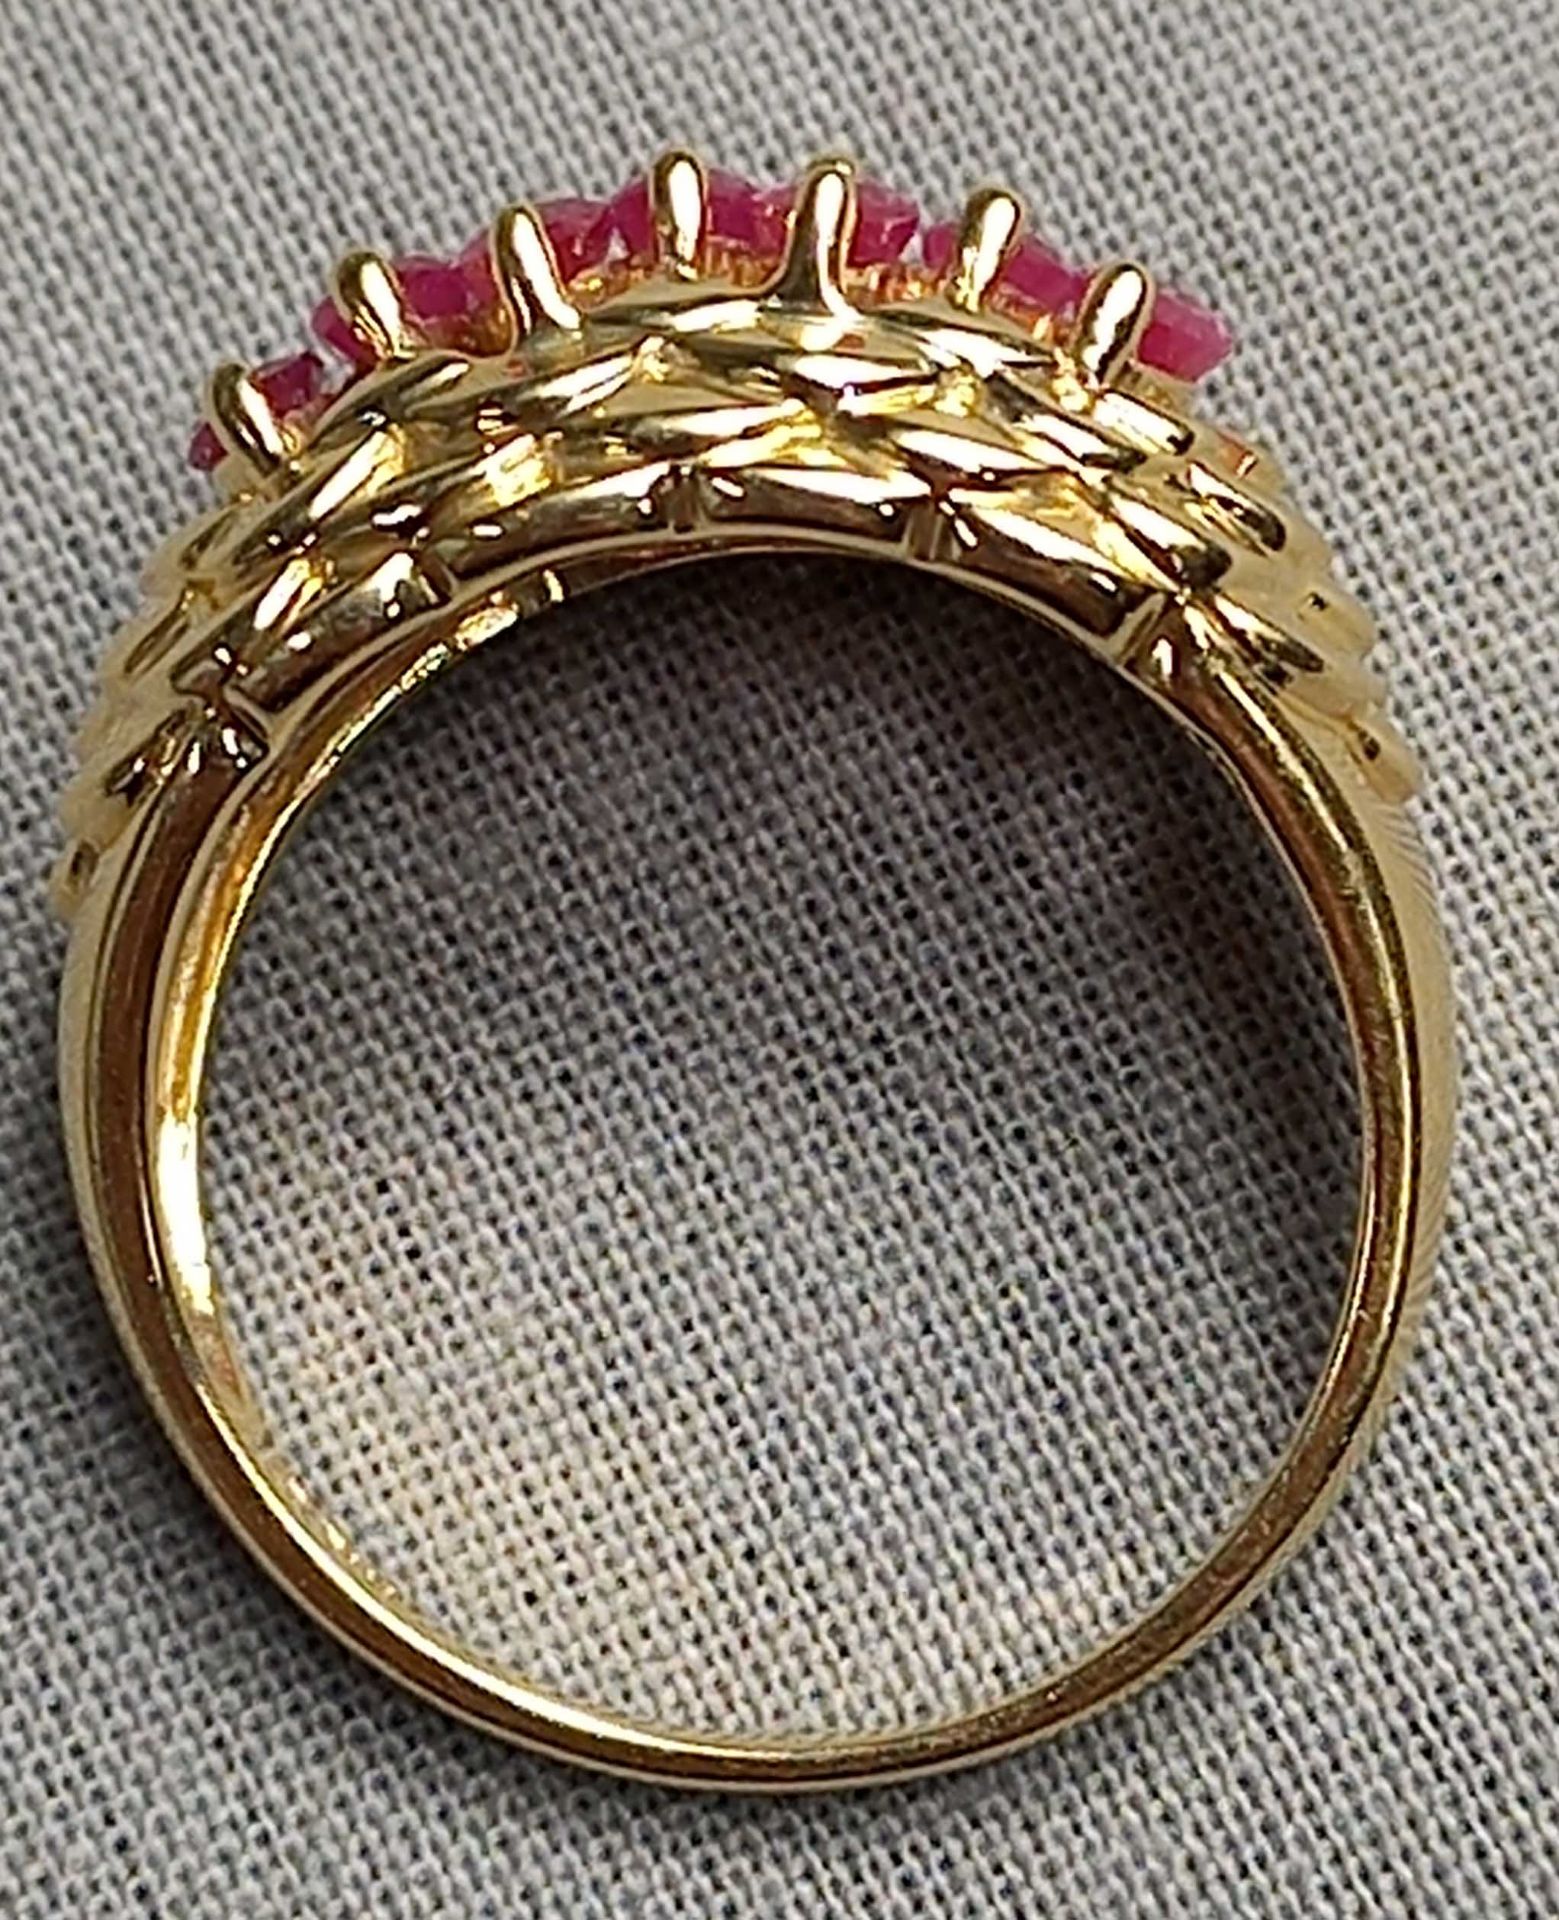 4 Ringe Gold 585 mit Steinen (Aquamarin, Rubin, Diamant, Saphir). - Bild 13 aus 29